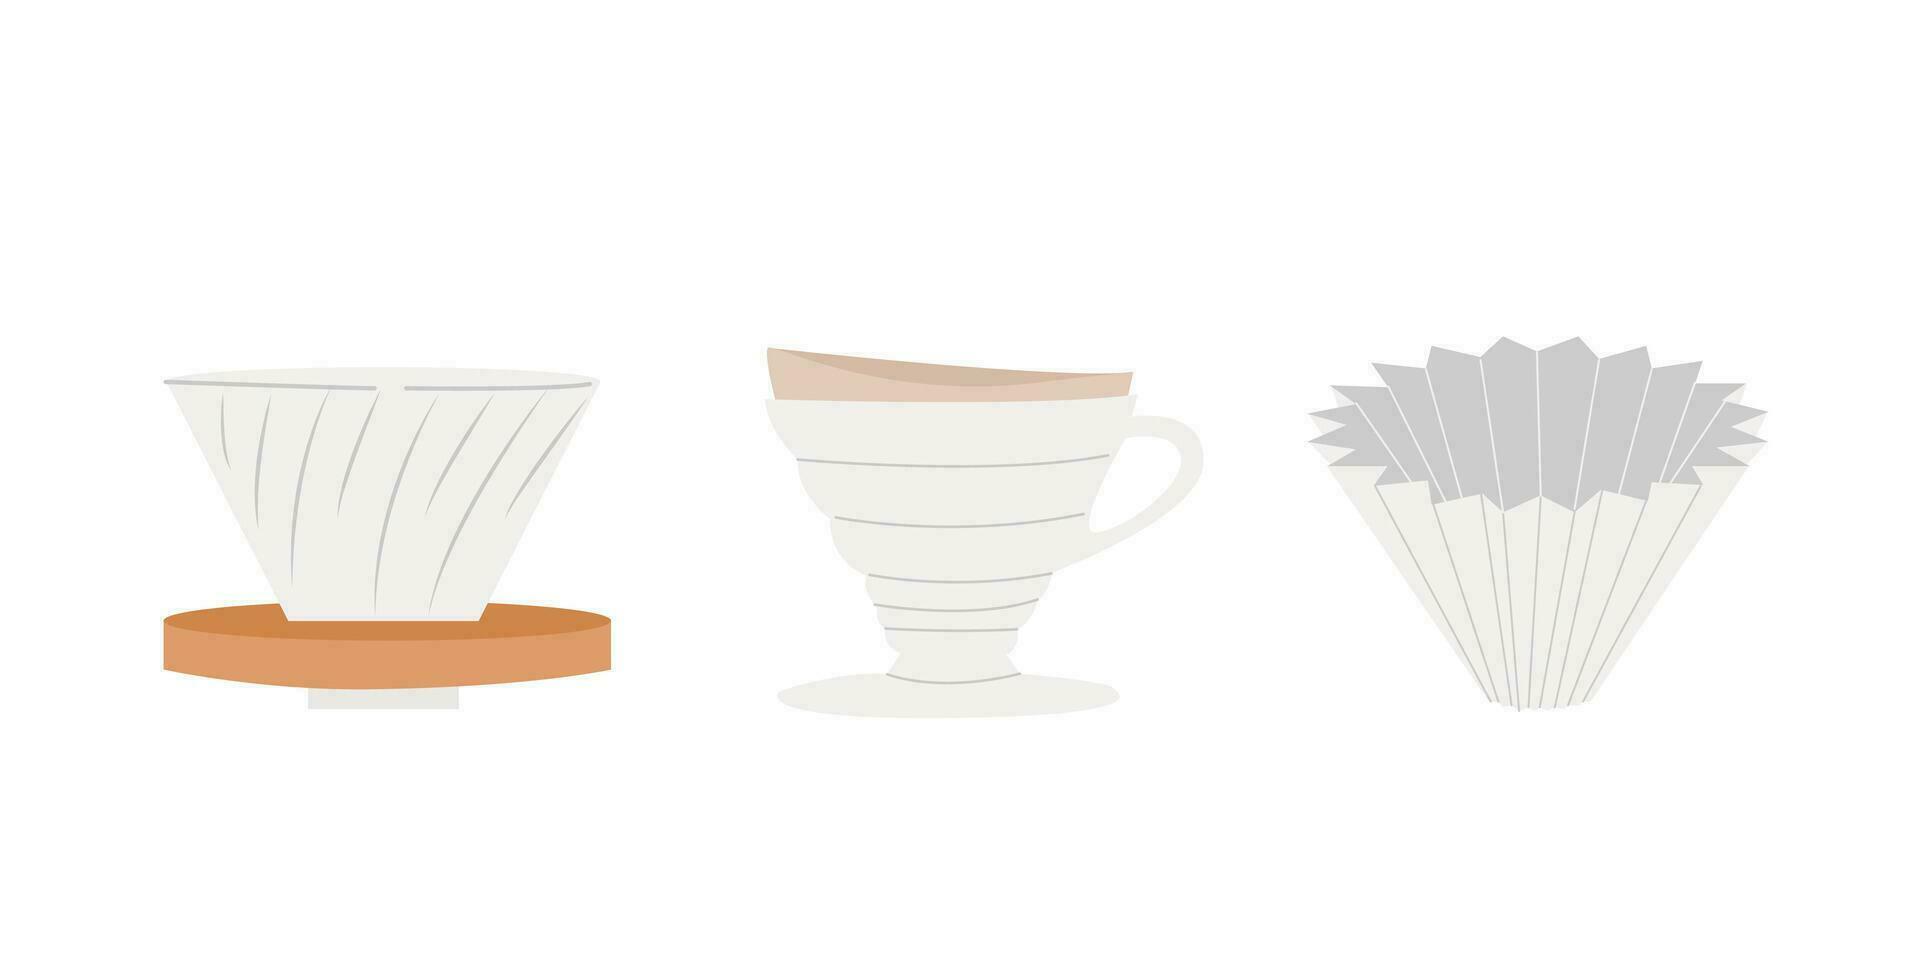 manuell alternativ kaffe bryggning metoder och verktyg hand dragen grafik. Häll i över dripper filtrera kaffe Tillbehör. vektor uppsättning minimalistisk hand dragen isolerat på vit bakgrund illustration.